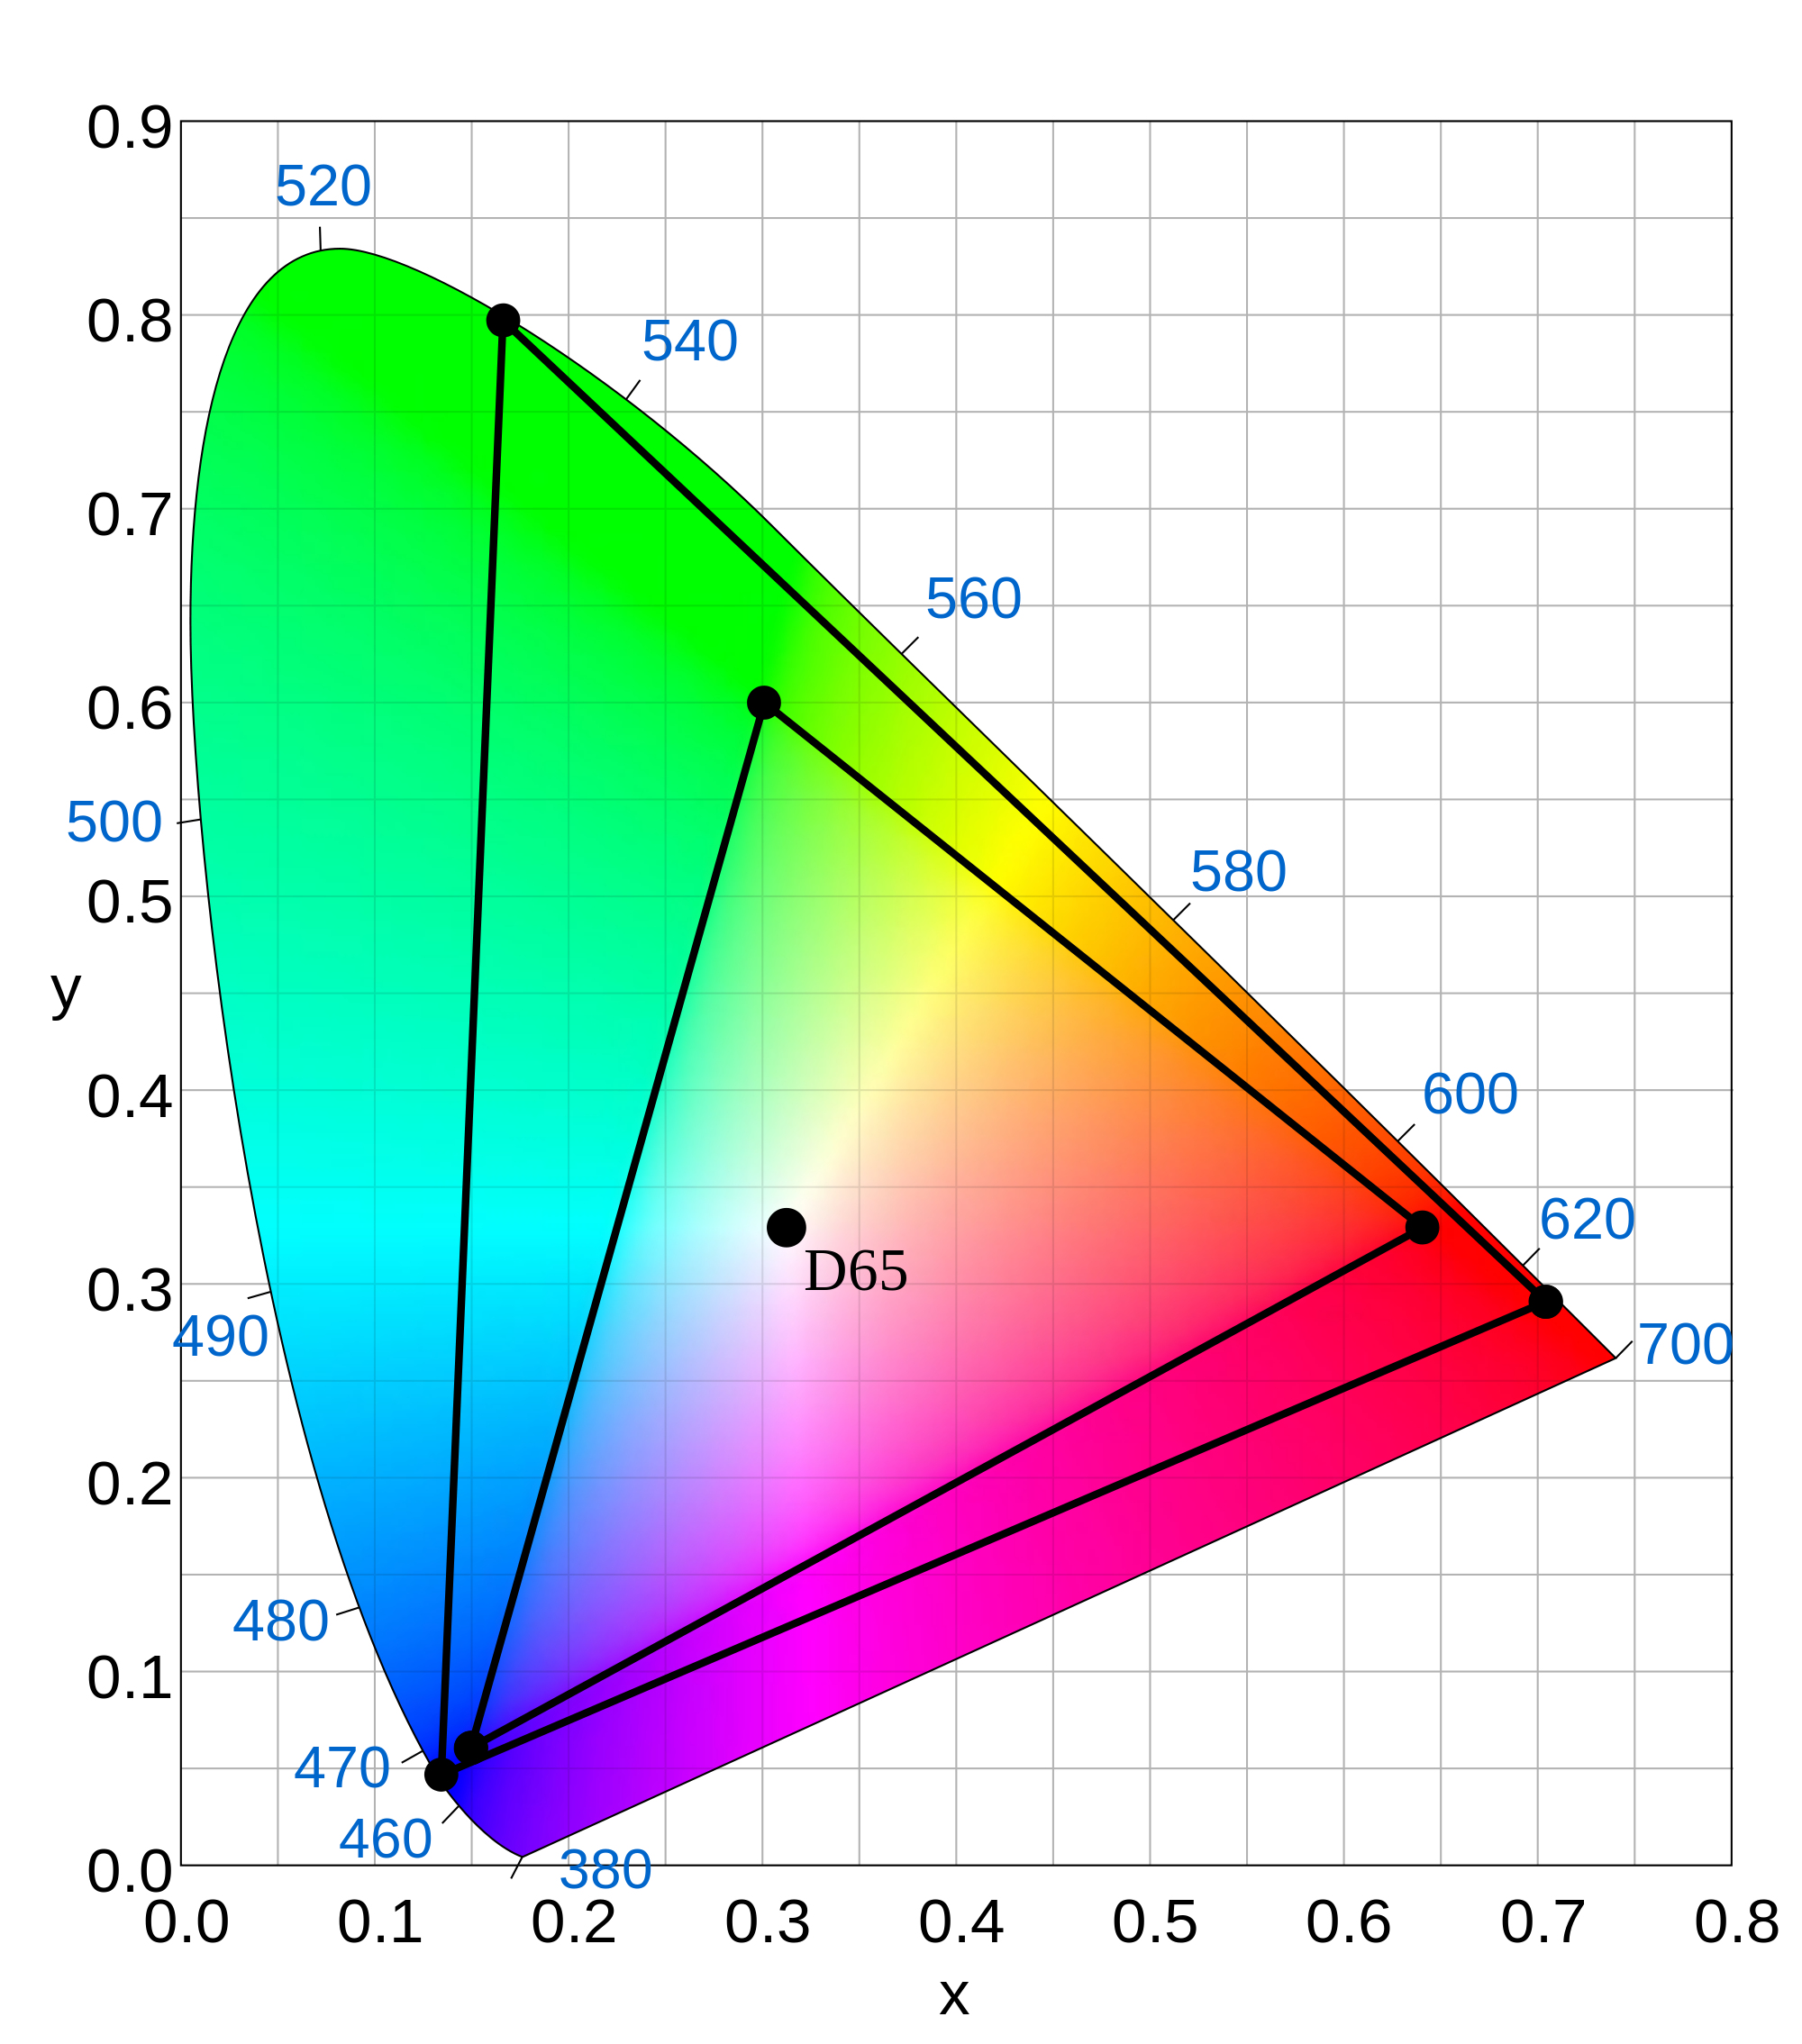 Fargerommet til 10-bit er langt større en dagens standard, som du ser som en liten trekant. Foto: Sakurambo / Wikimedia Commons